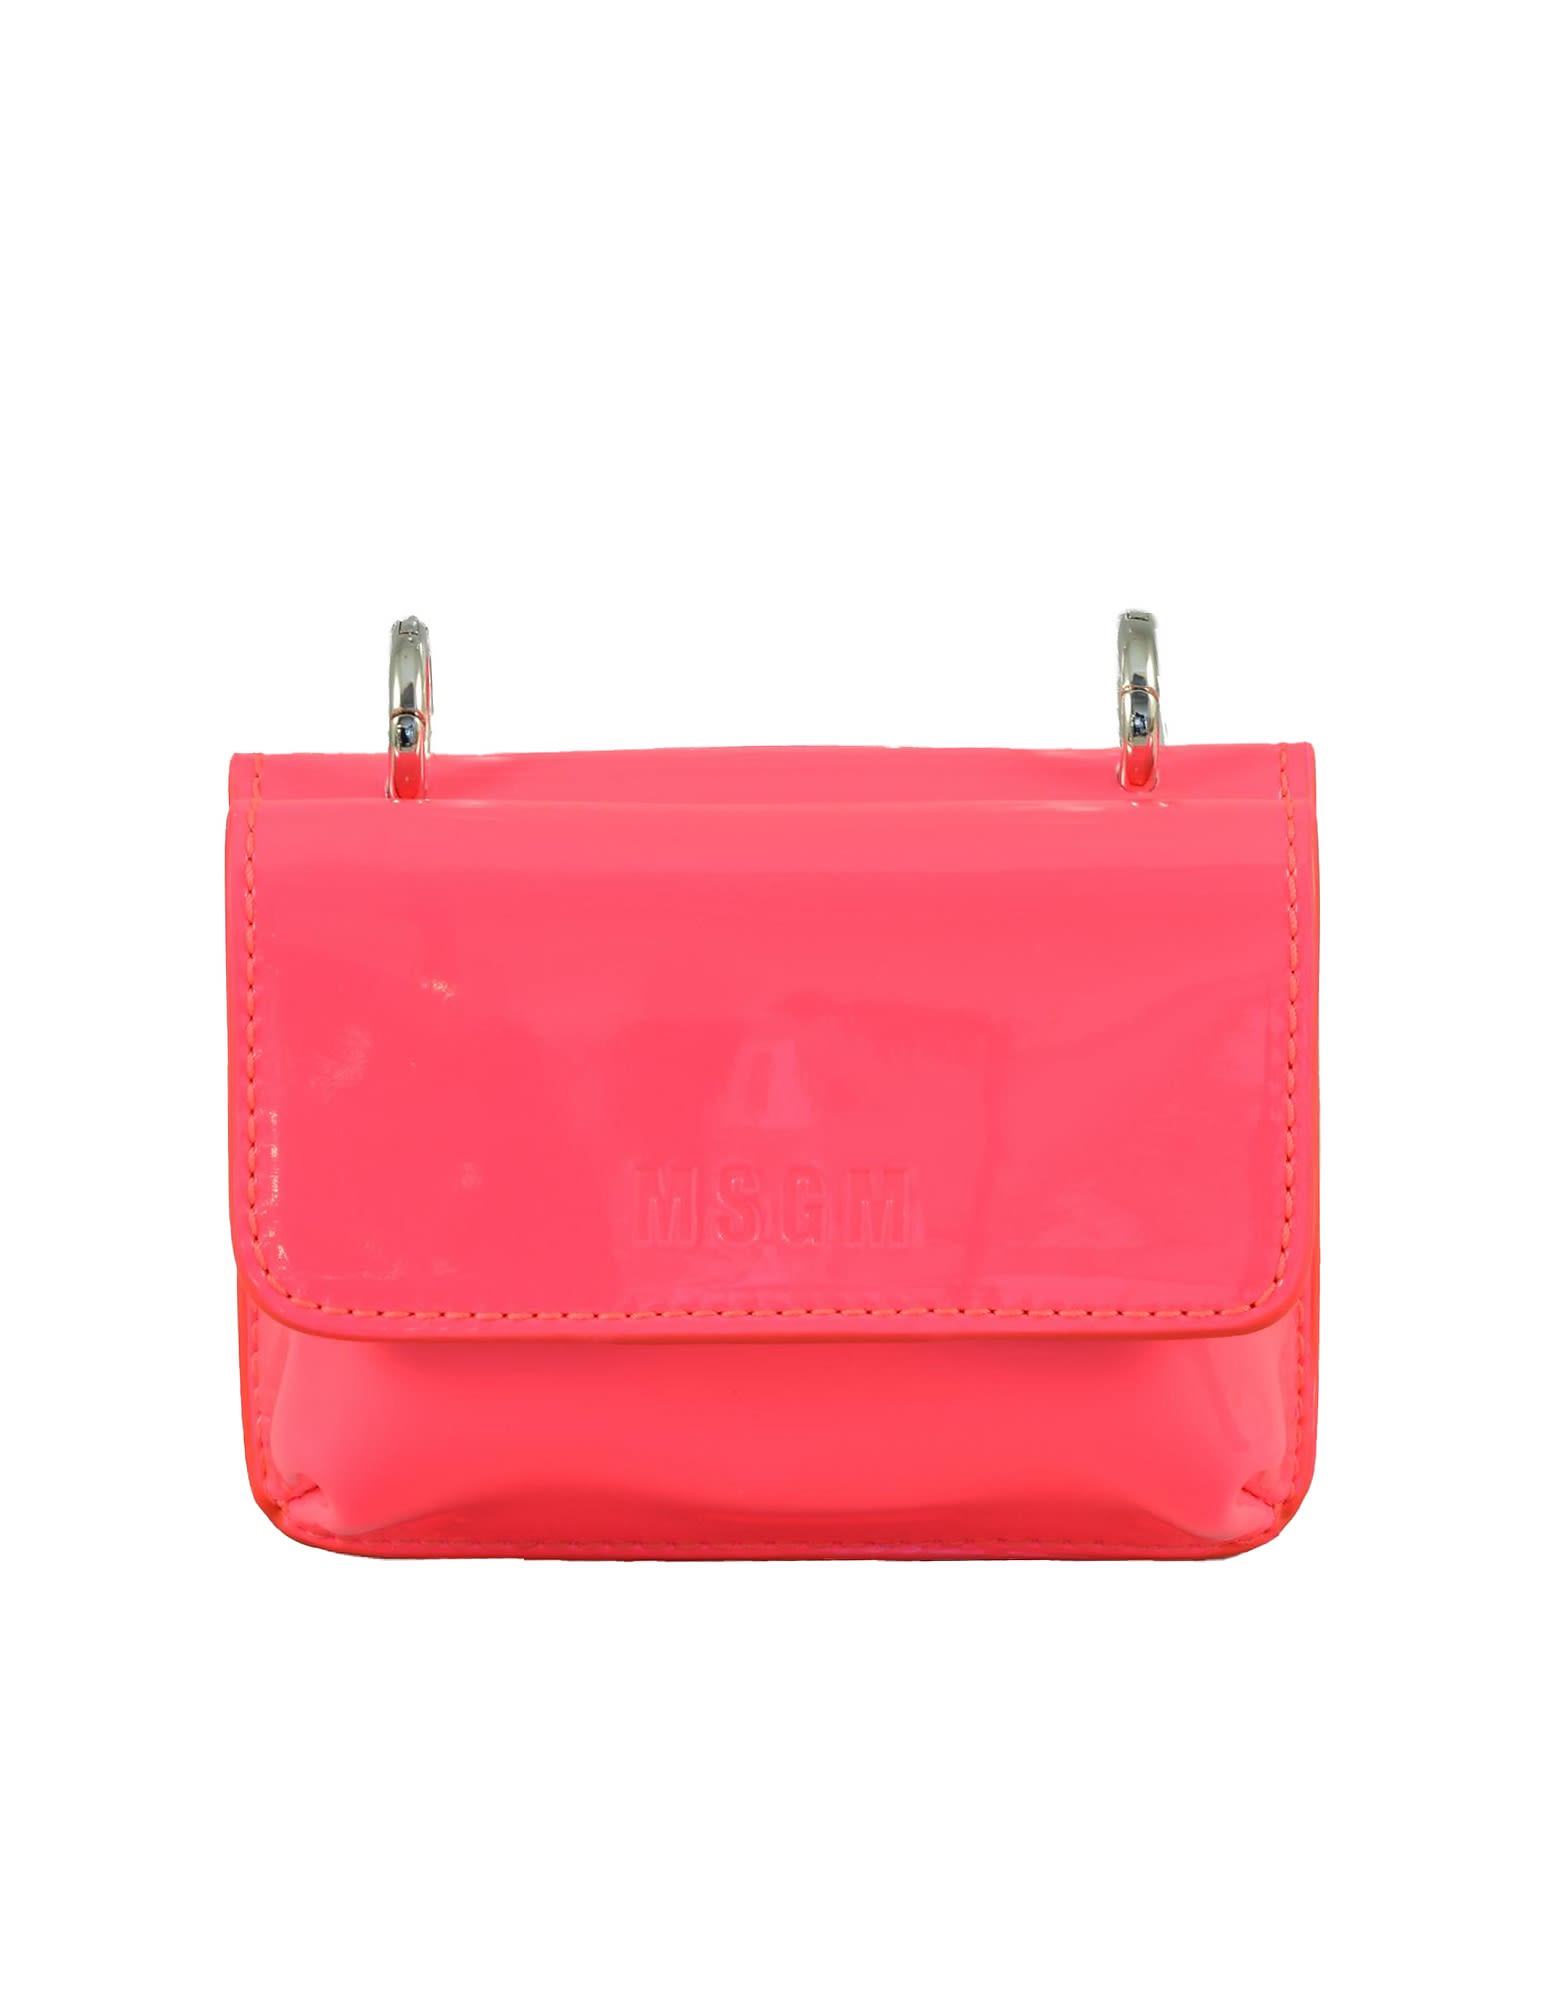 Msgm Womens Rosa Fluo Handbag